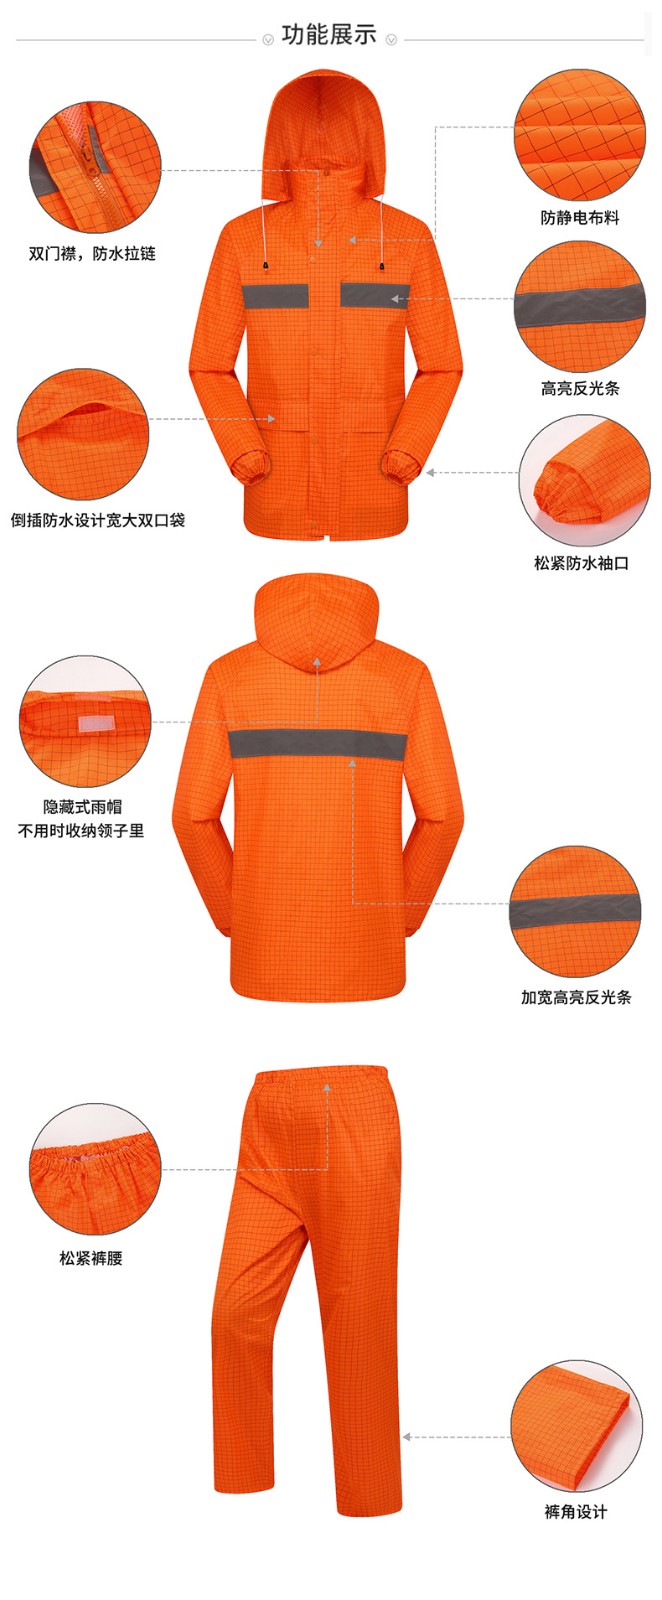 燕王 667防静电防水处理安全反光化工雨衣套装桔红色-XL